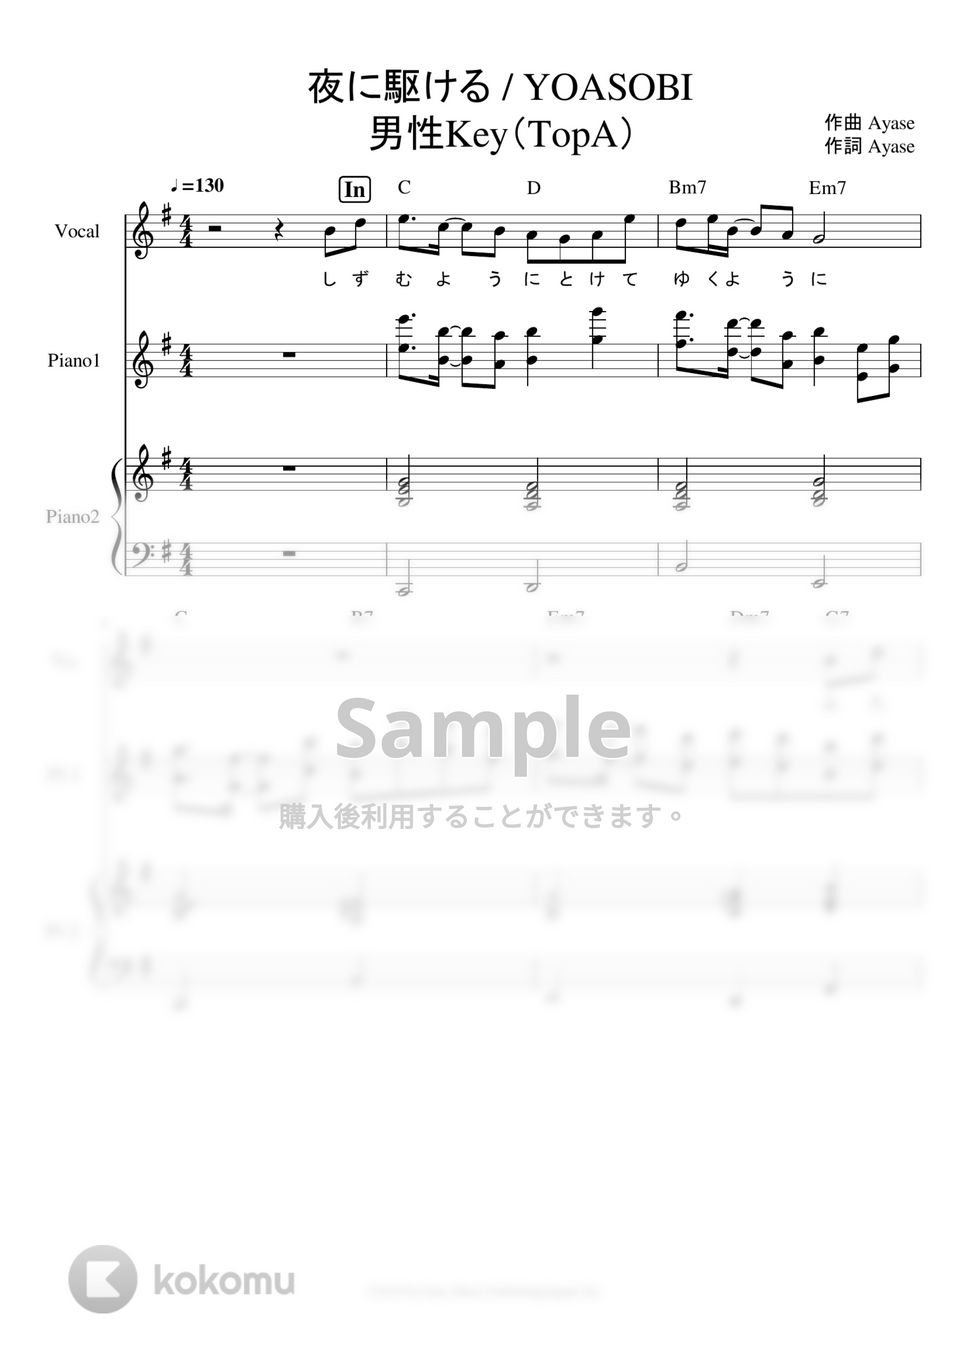 YOASOBI - ※Sample 夜に駆ける ピアノパート譜※男声アレンジ (曲した男声キーに編ピアノパート譜です。) by ましまし